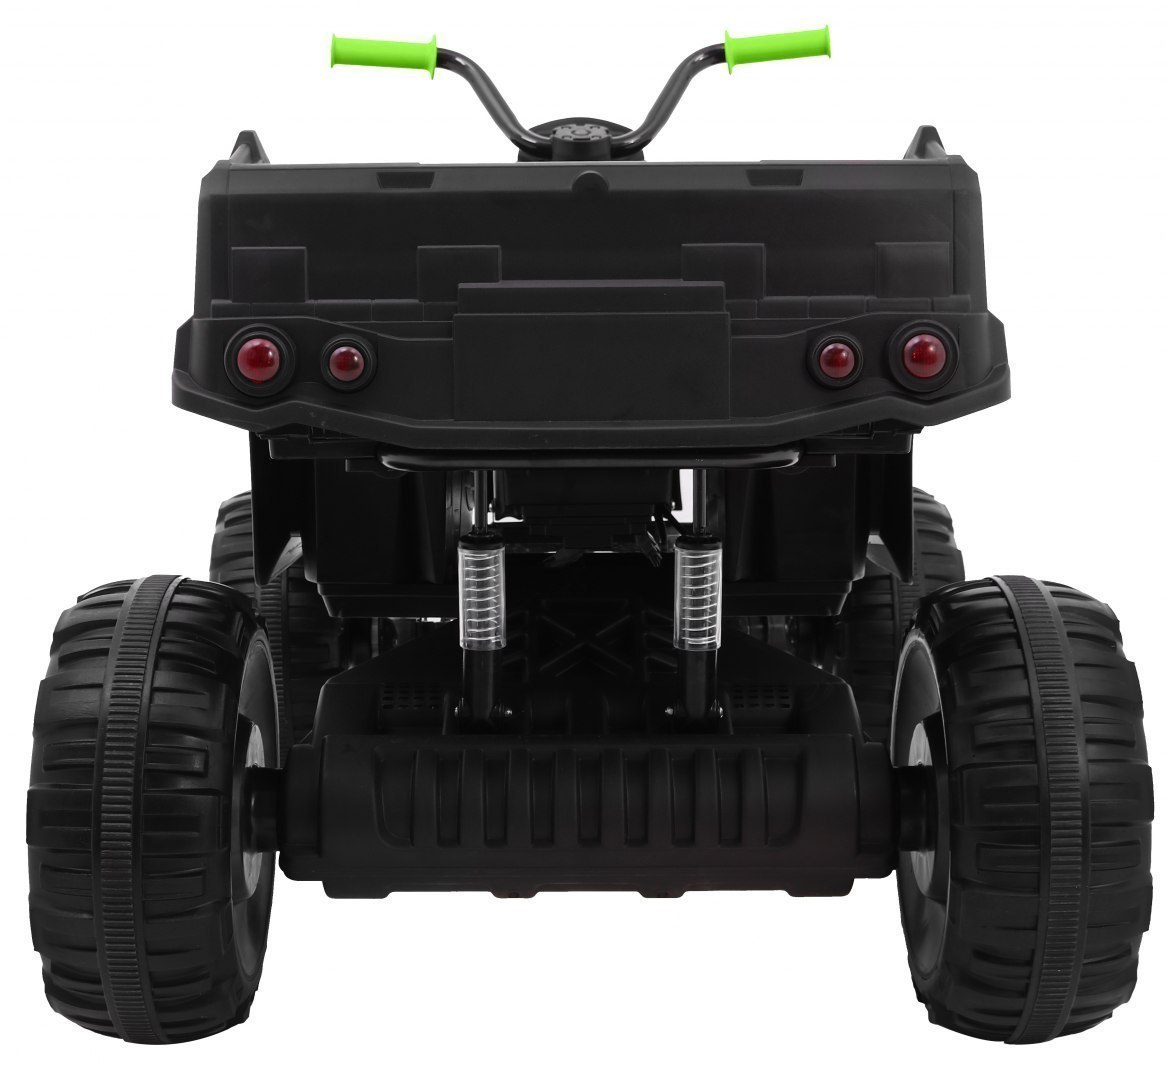 Pojazd Quad XL ATV, Pilot 2.4GHZ Czarno Zielony